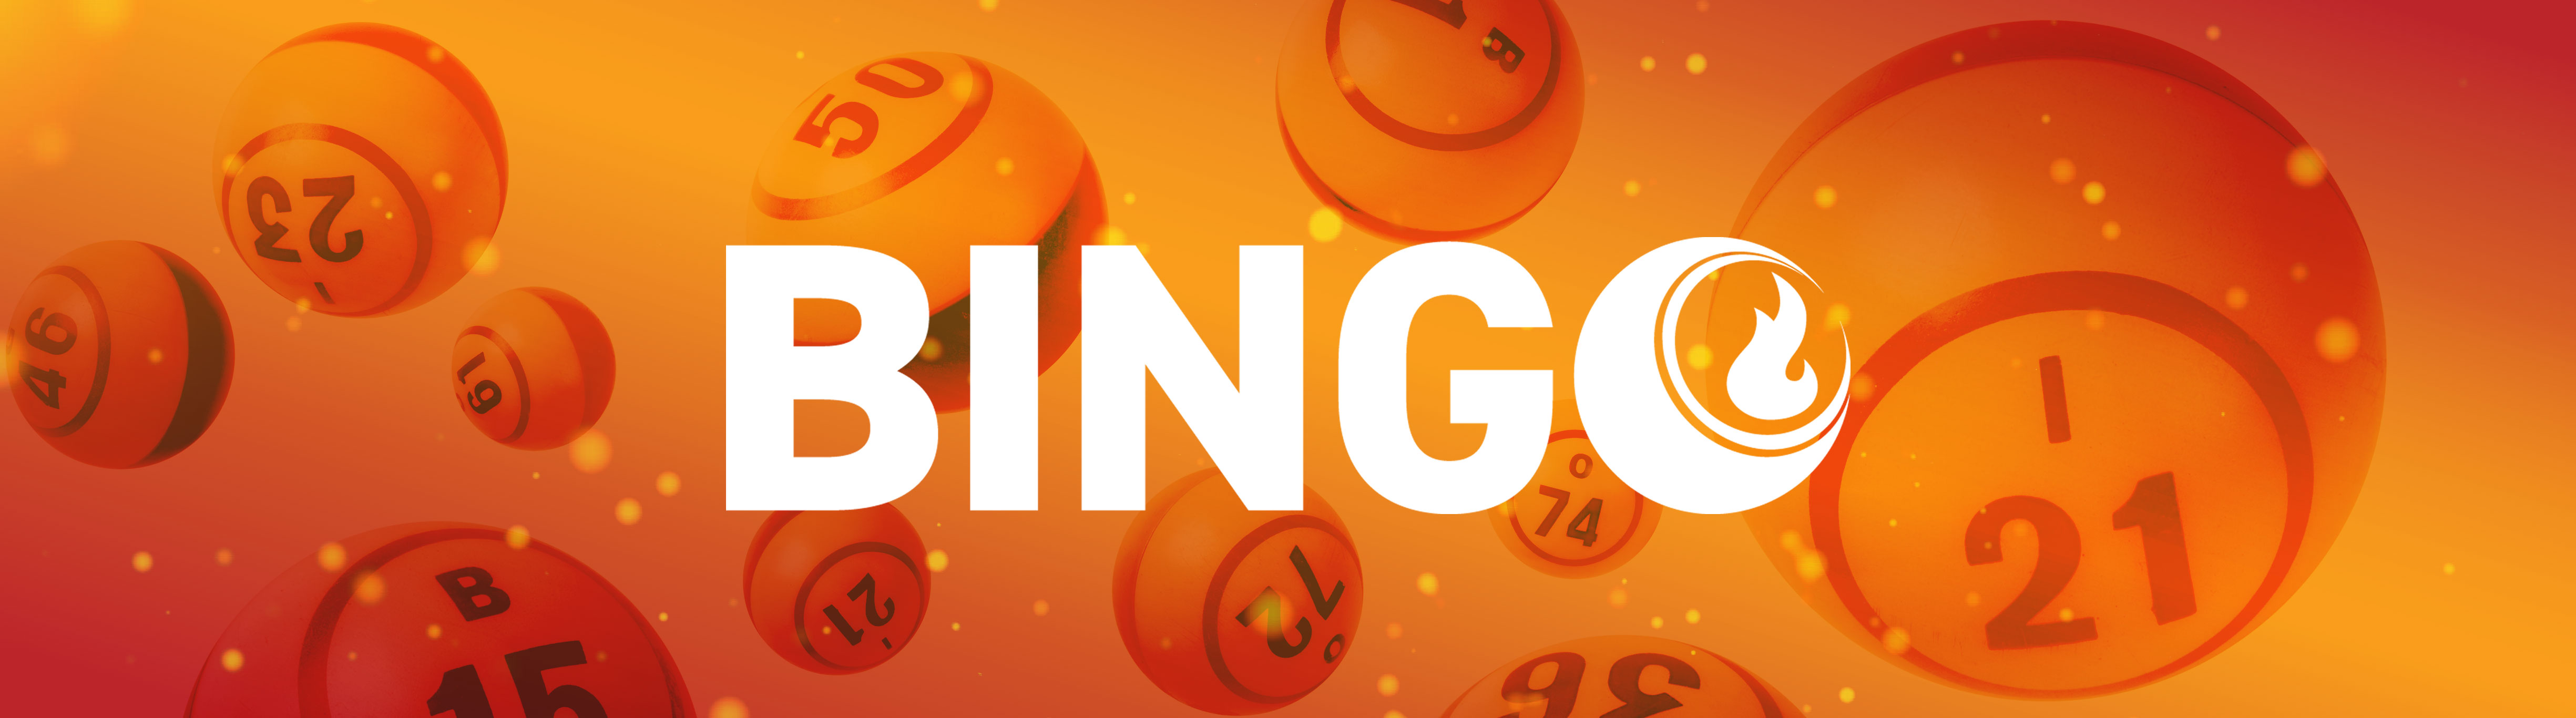 potawatomi casino bingo